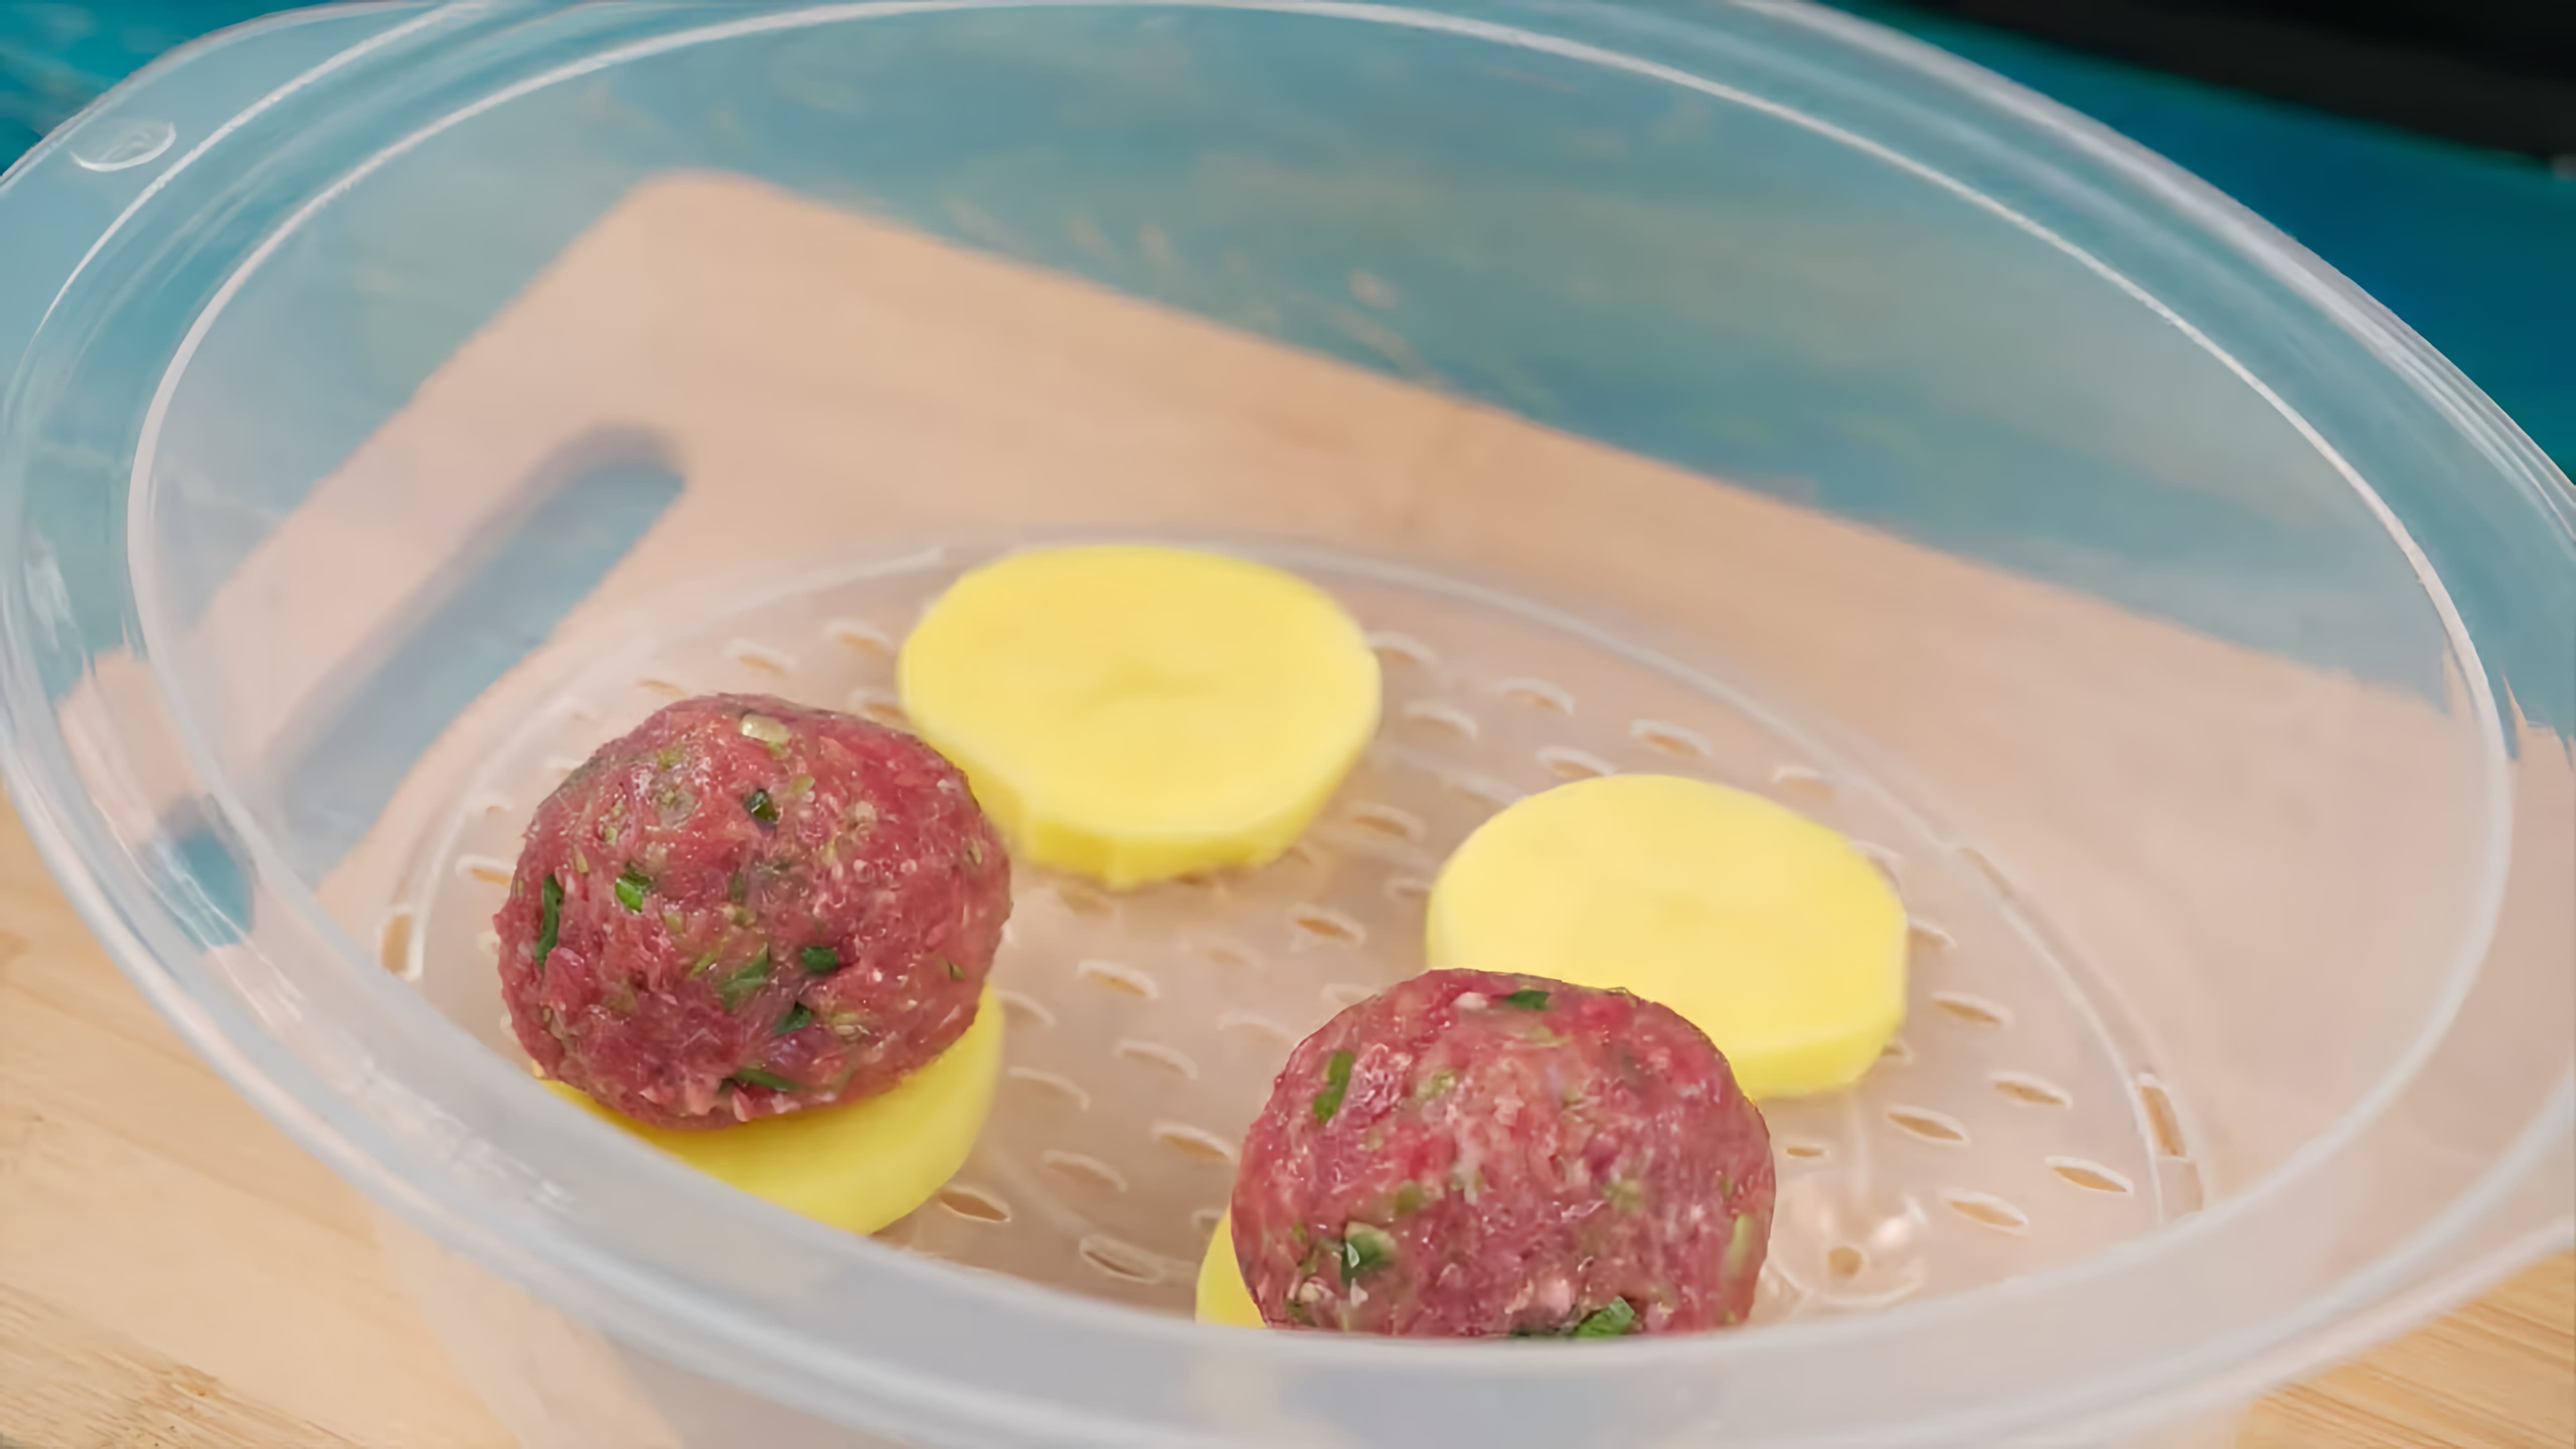 Видео как приготовить три разных блюда с использованием пароварки - фаршированные шарики из цуккини, рулеты из рыбы с овощами и тыквенные пельмени